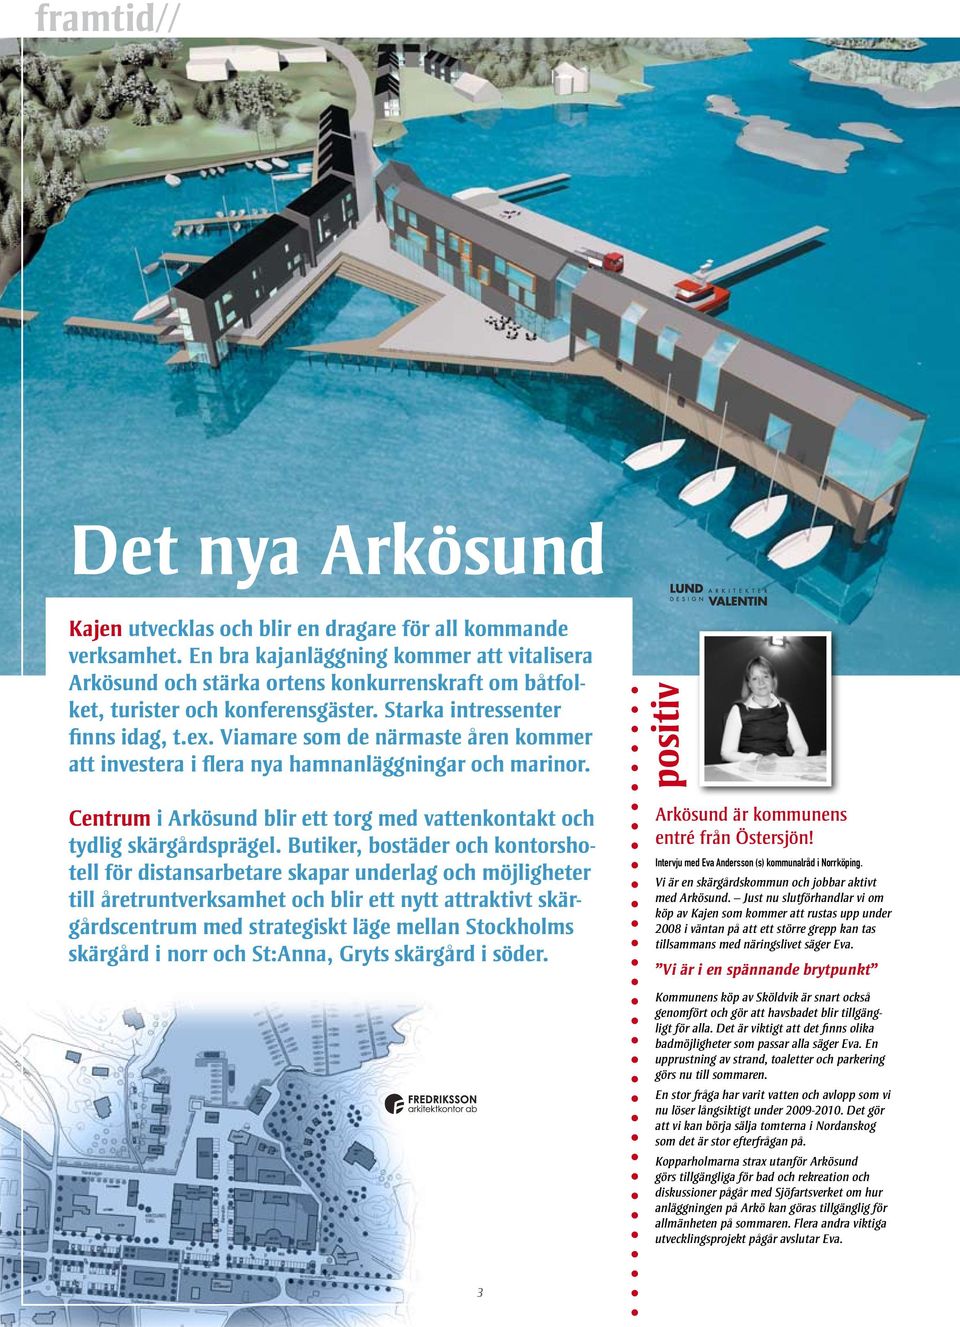 Viamare som de närmaste åren kommer att investera i flera nya hamnanläggningar och marinor. positiv Centrum i Arkösund blir ett torg med vattenkontakt och tydlig skärgårdsprägel.